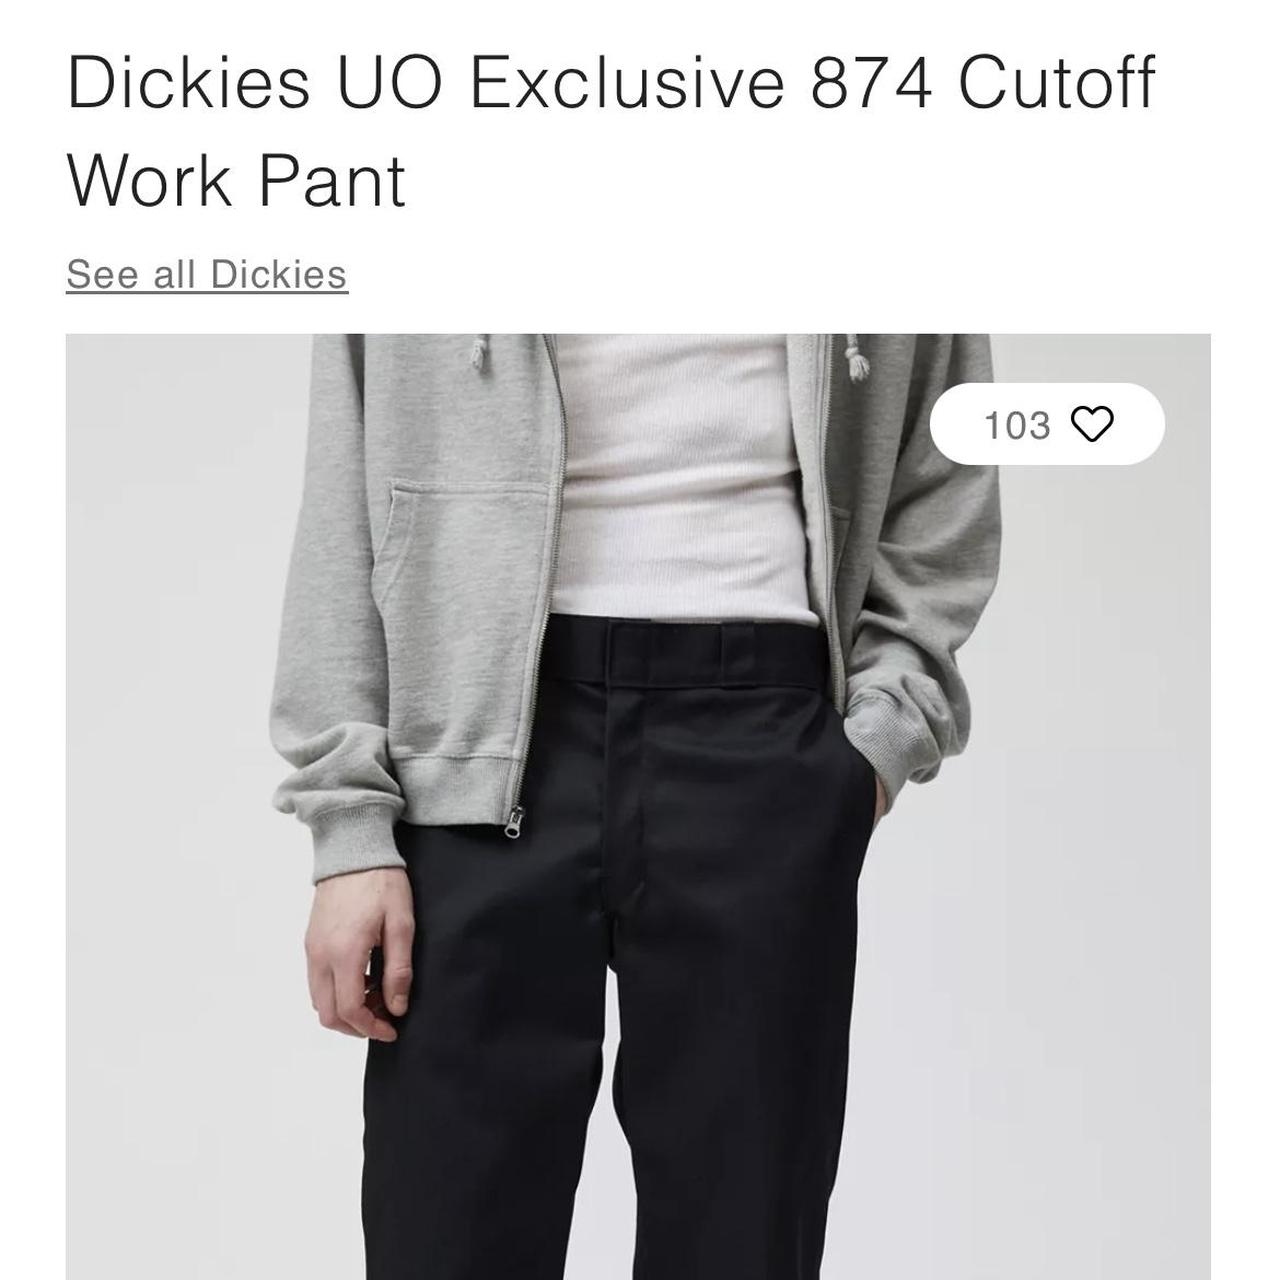 Dickies UO Exclusive 874 Cutoff Work Pant